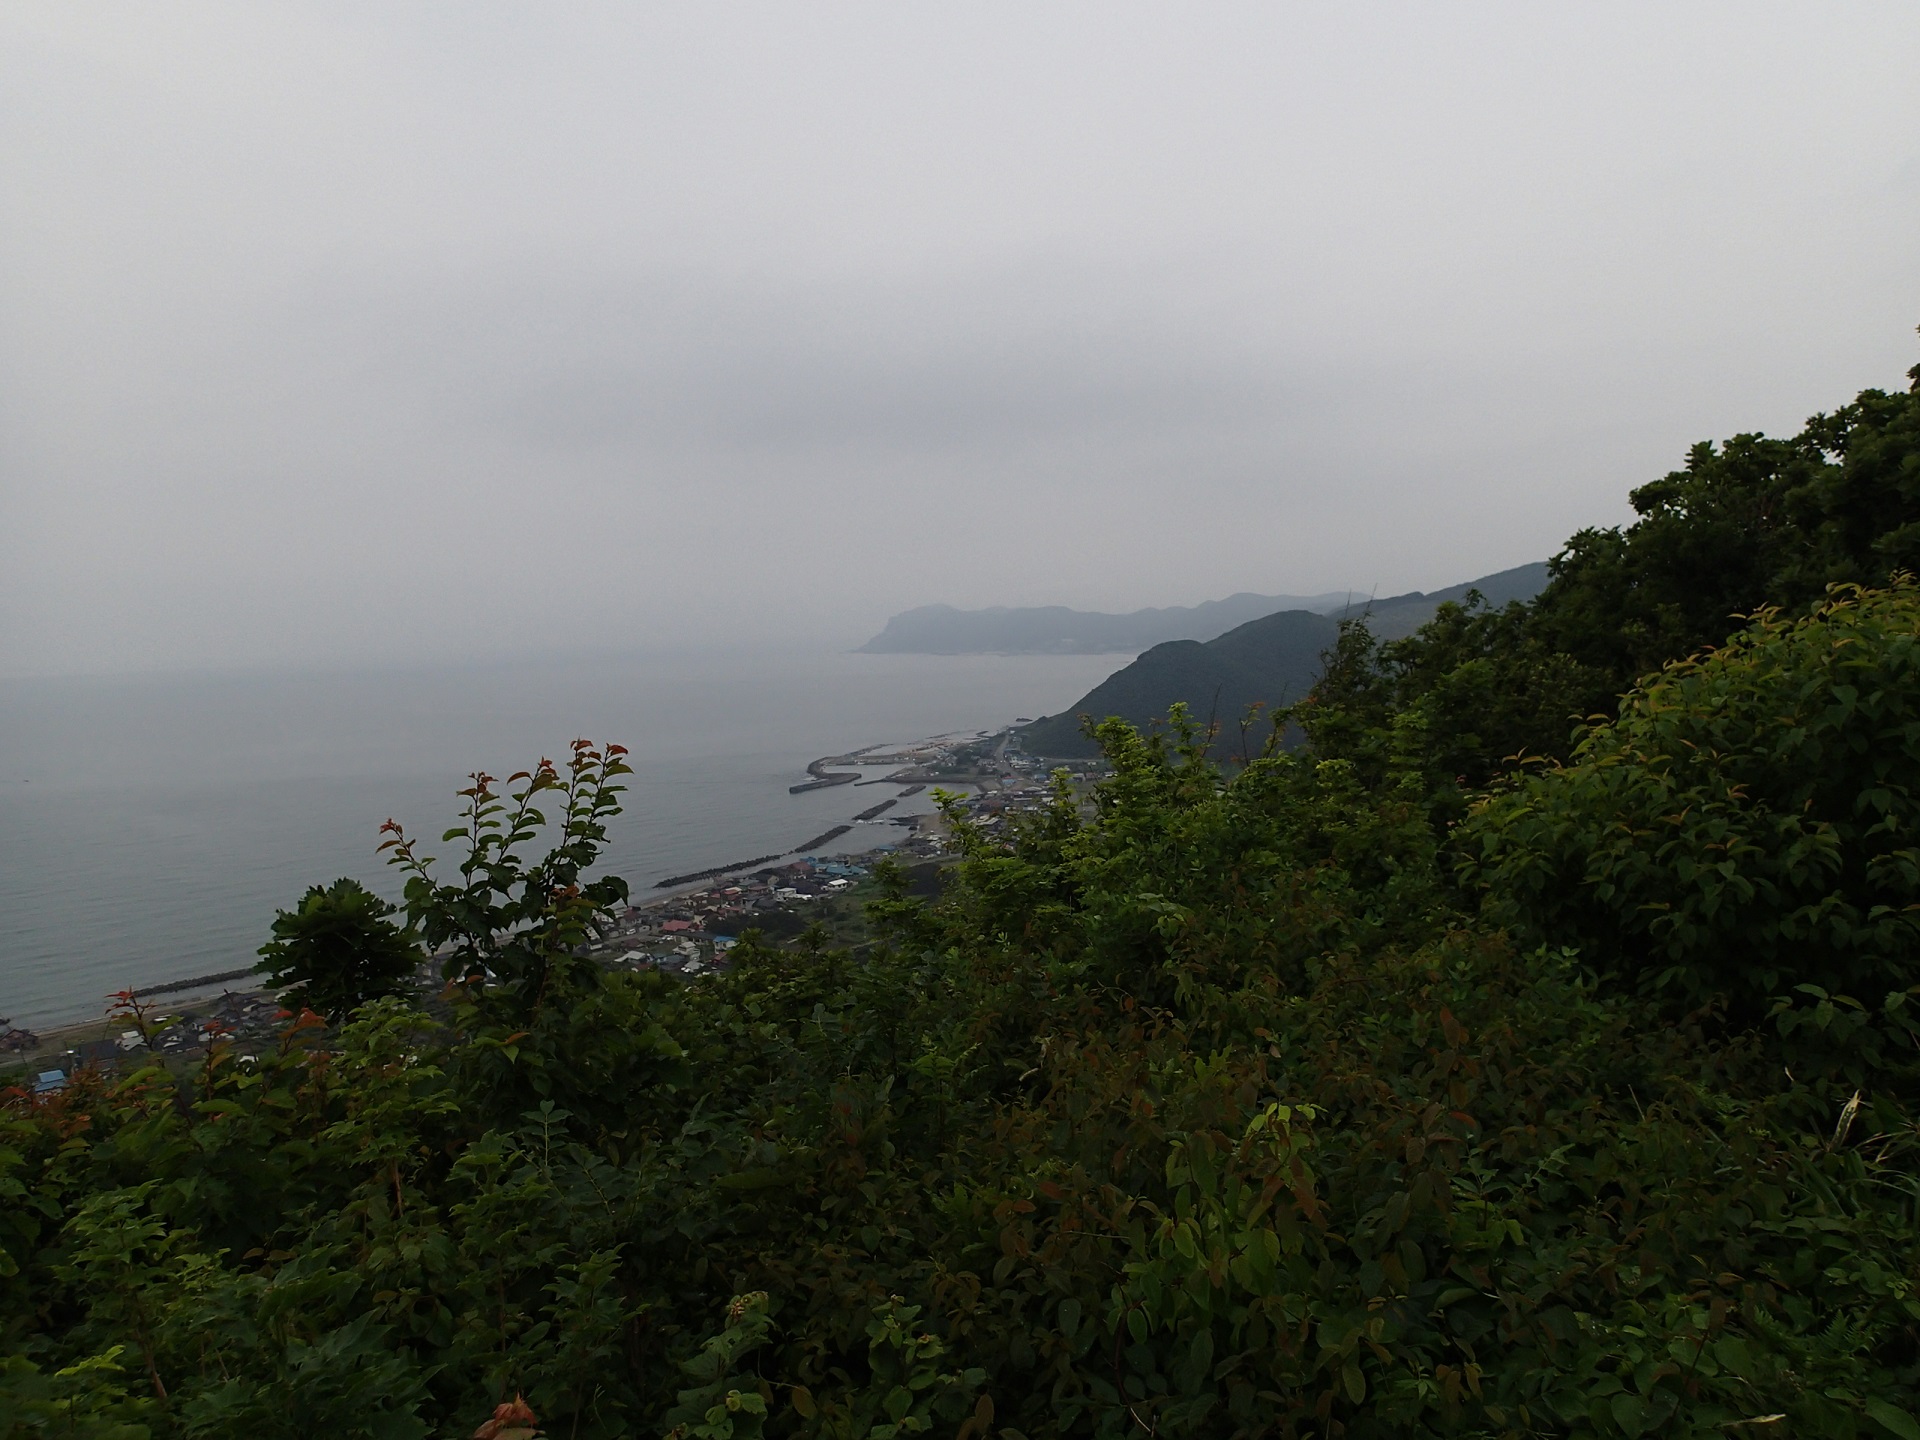 晴天時は権現崎や七里長浜が見渡せる。